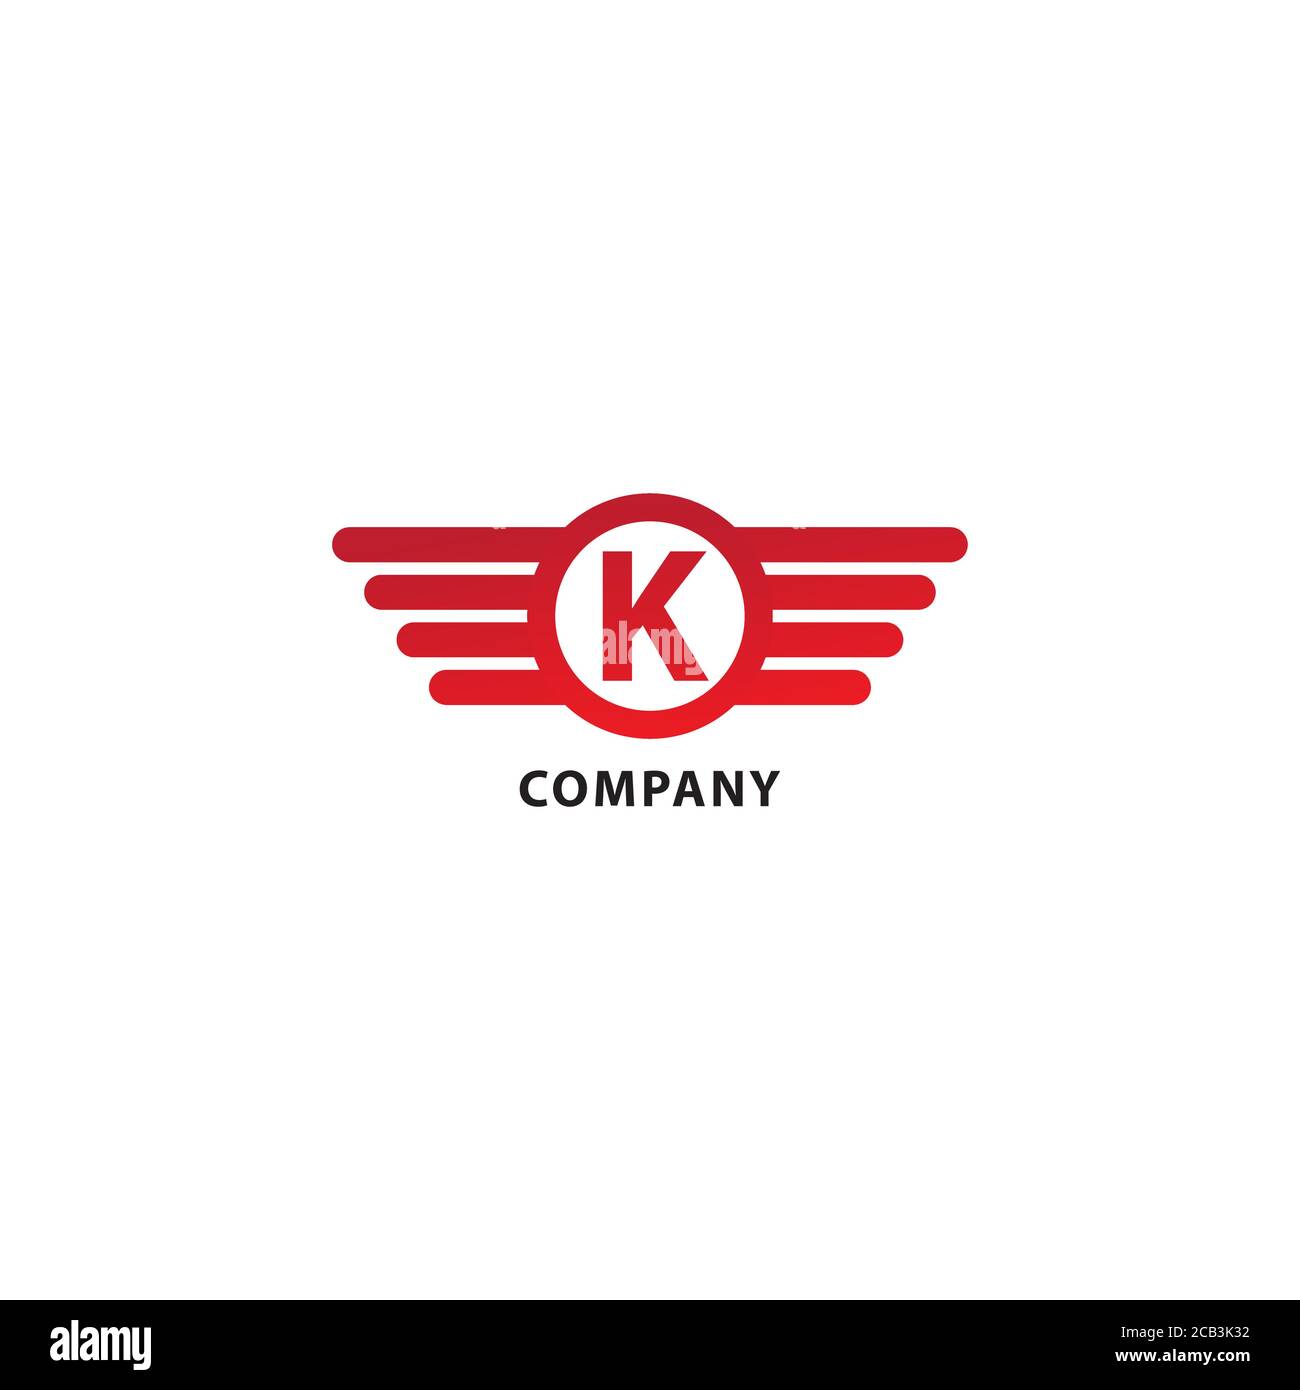 Lettera K modello iniziale di progettazione del logo Abjad. Isolato su sfondo bianco. Ali arrotondate, forma a ellisse e logo Alfabeto. Tema colore rosso. Illustrazione Vettoriale